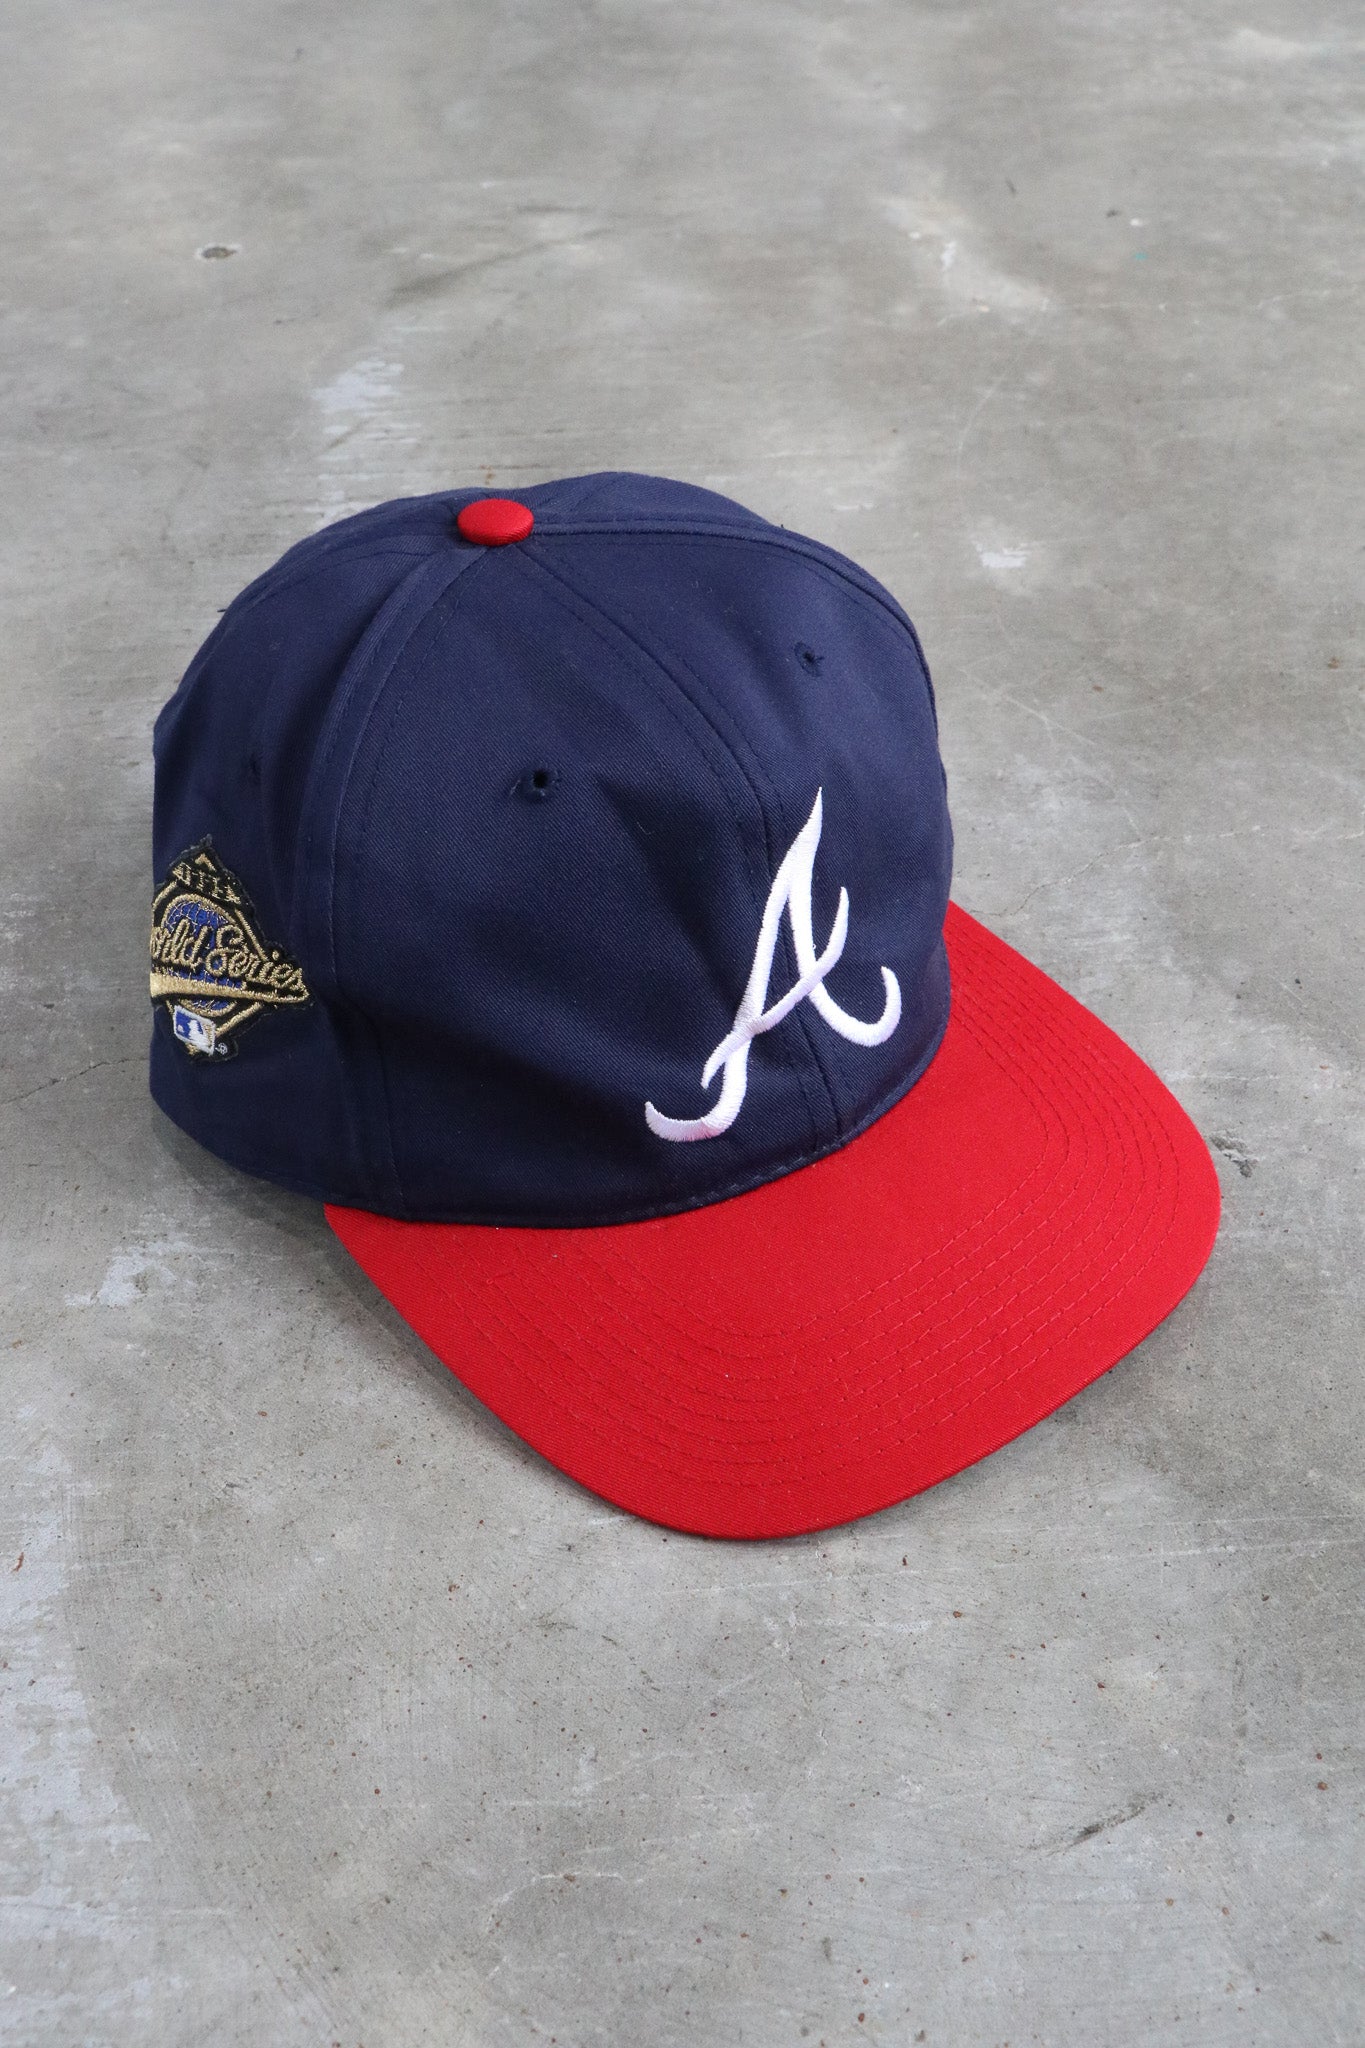 Vintage 1995 MLB Braves Embroidered Hat